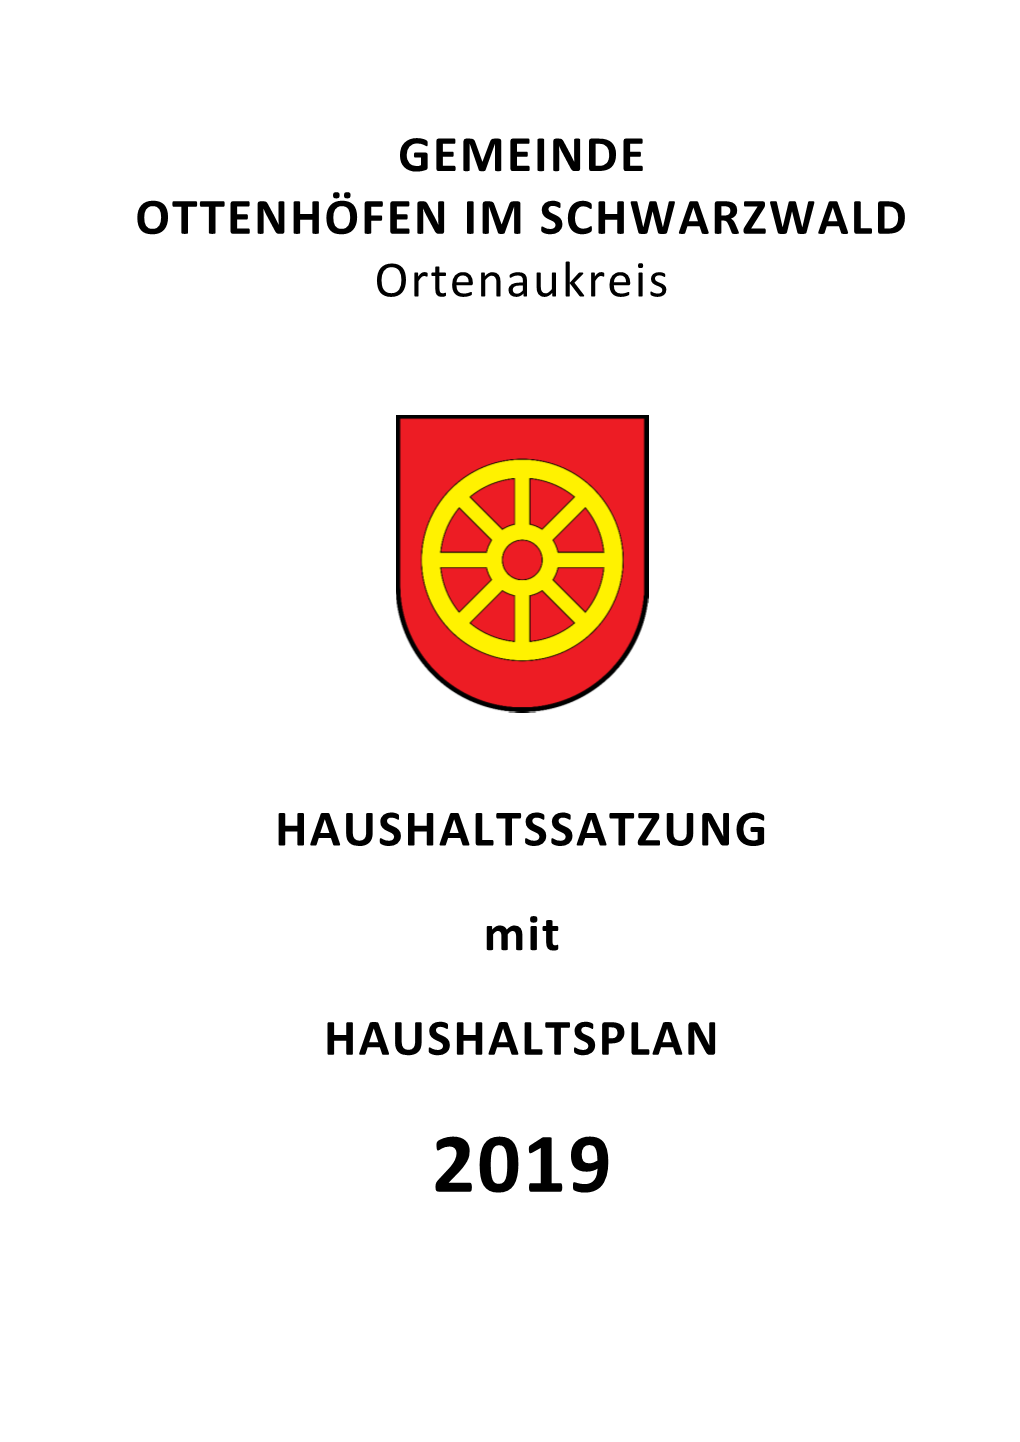 Haushaltsplan 2019 Der Gemeinde Ottenhöfen Im Schwarzwald